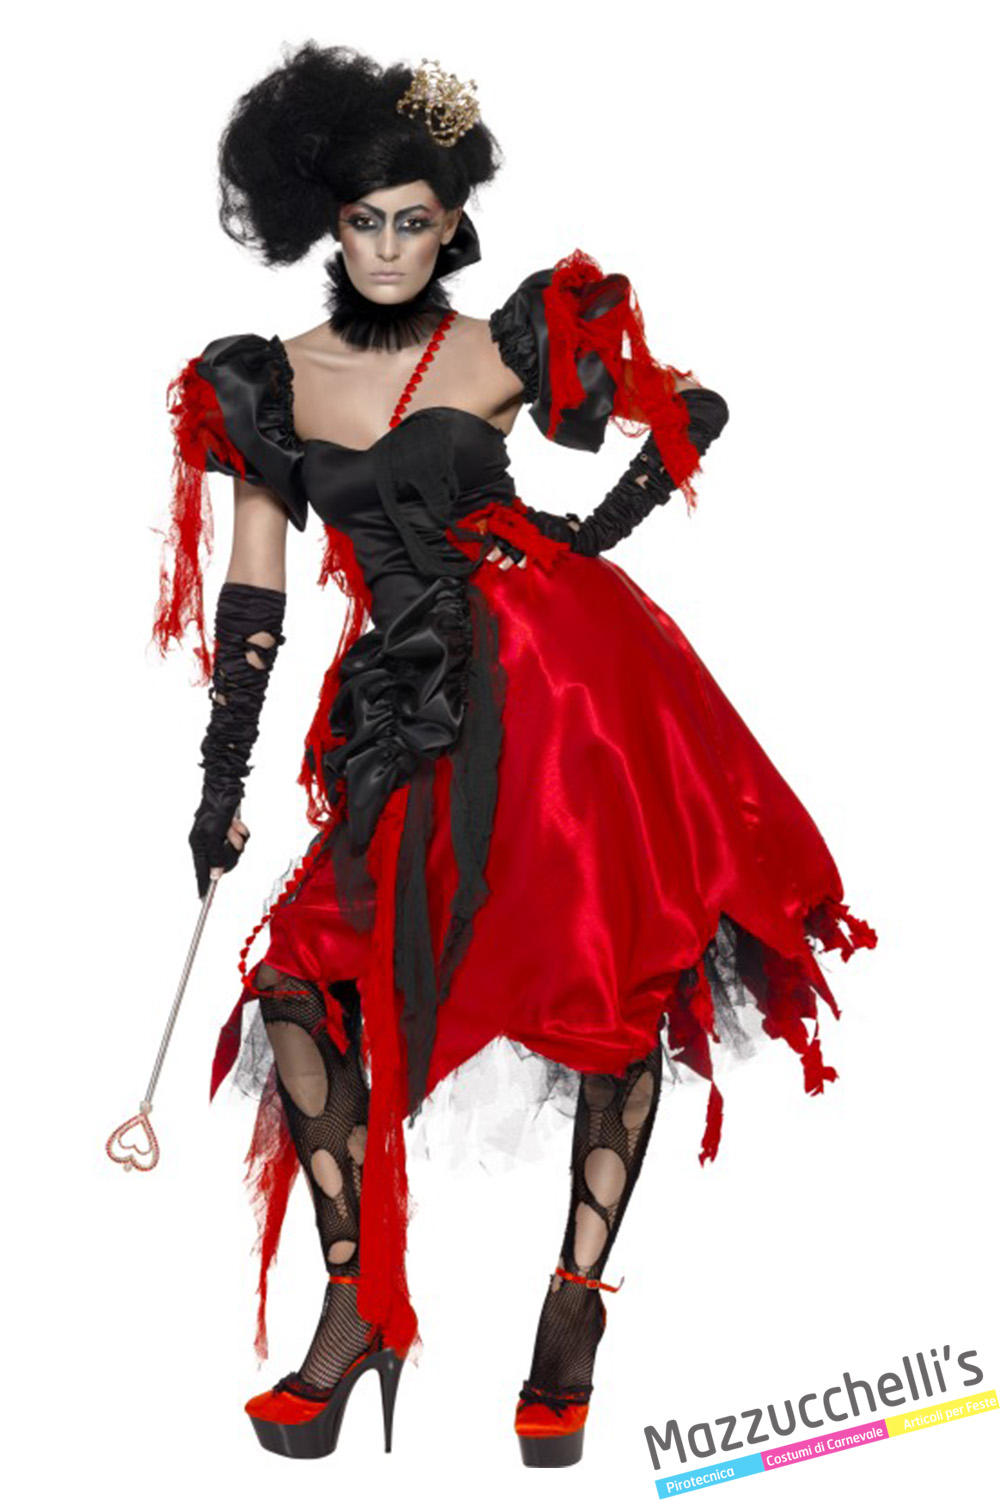 Costume Regina Di Cuori Zombie in vendita a Samarate Varese da Mazzucchellis